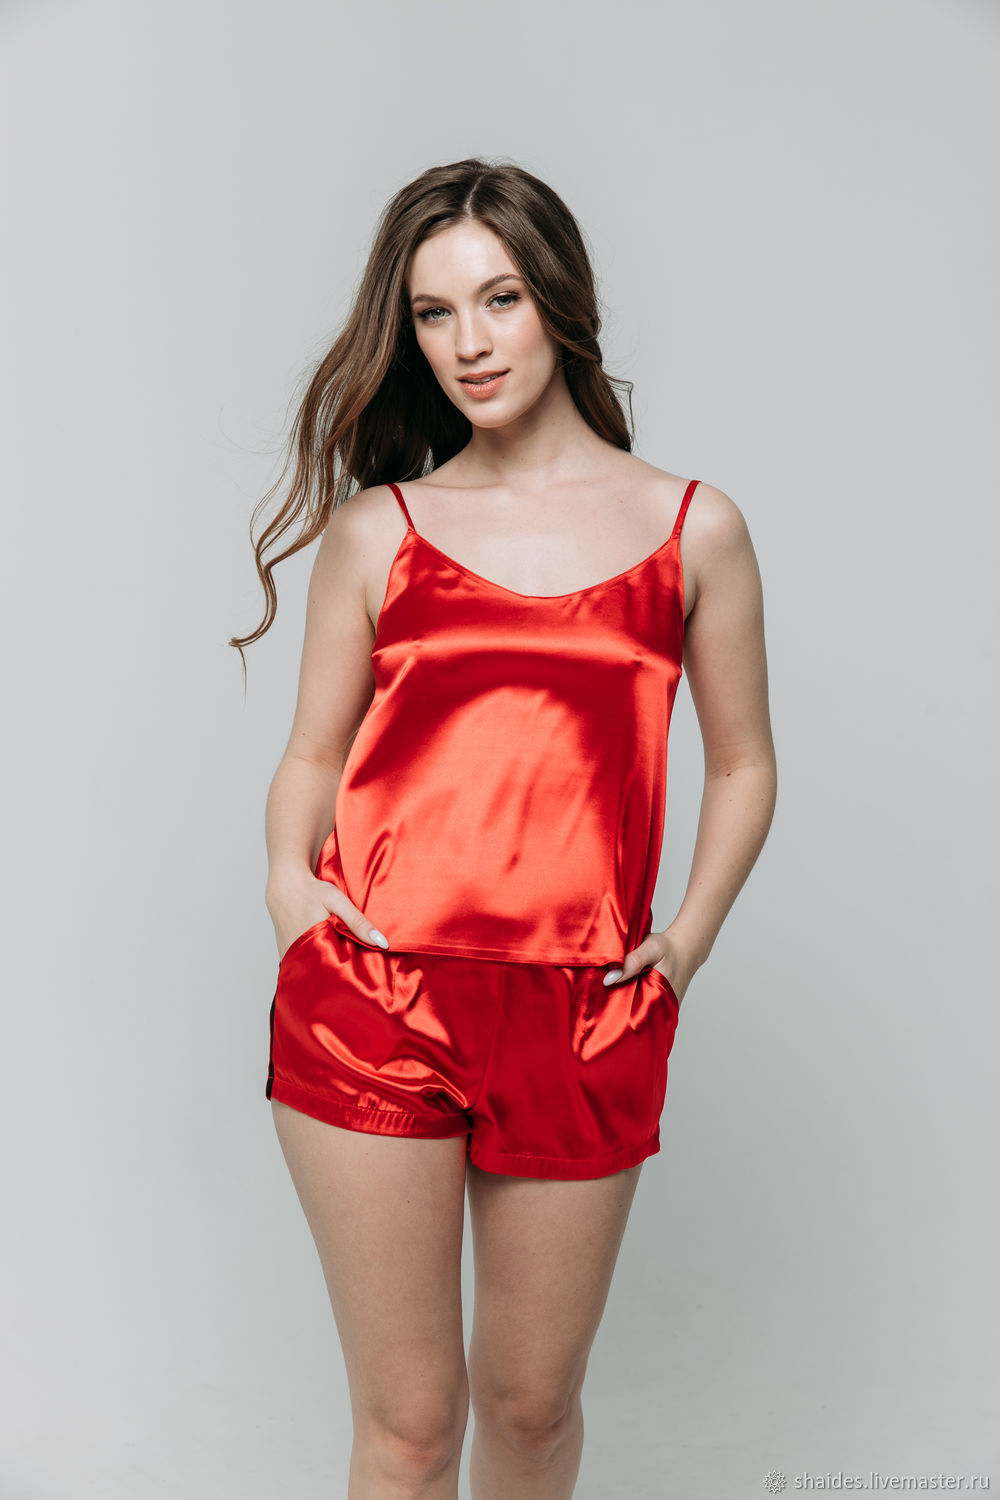 Красная шелковая пижама женская